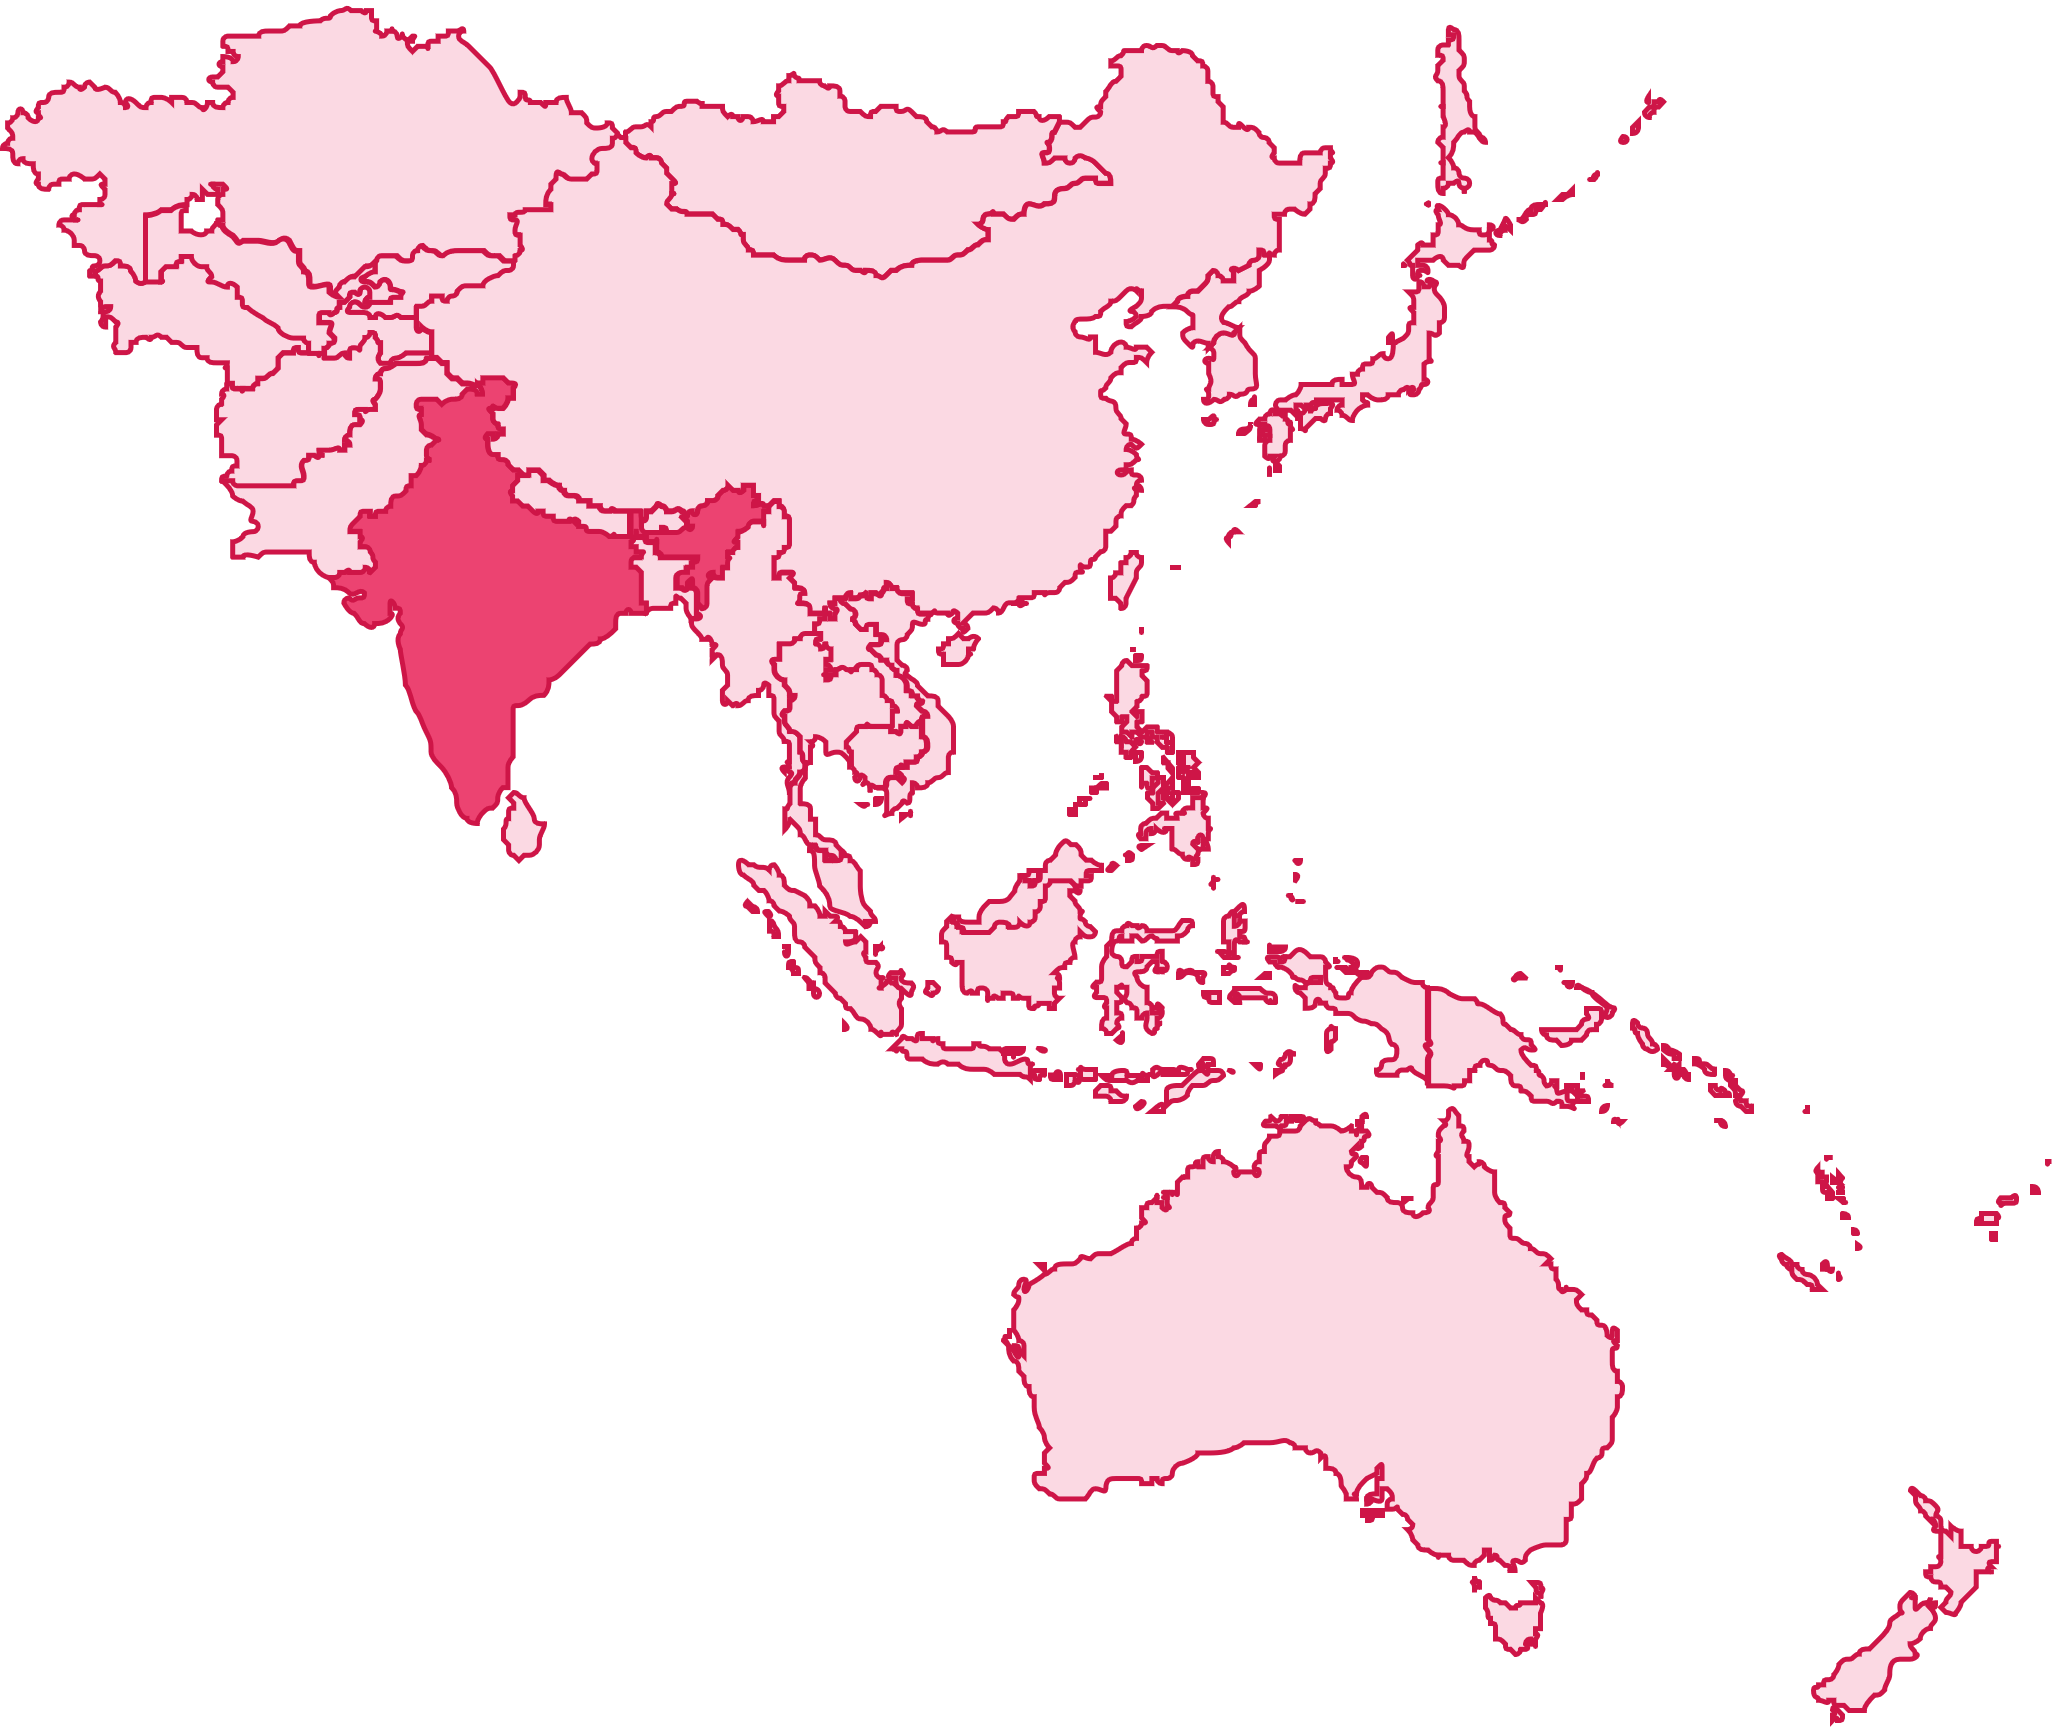 Asia-Pacific, India